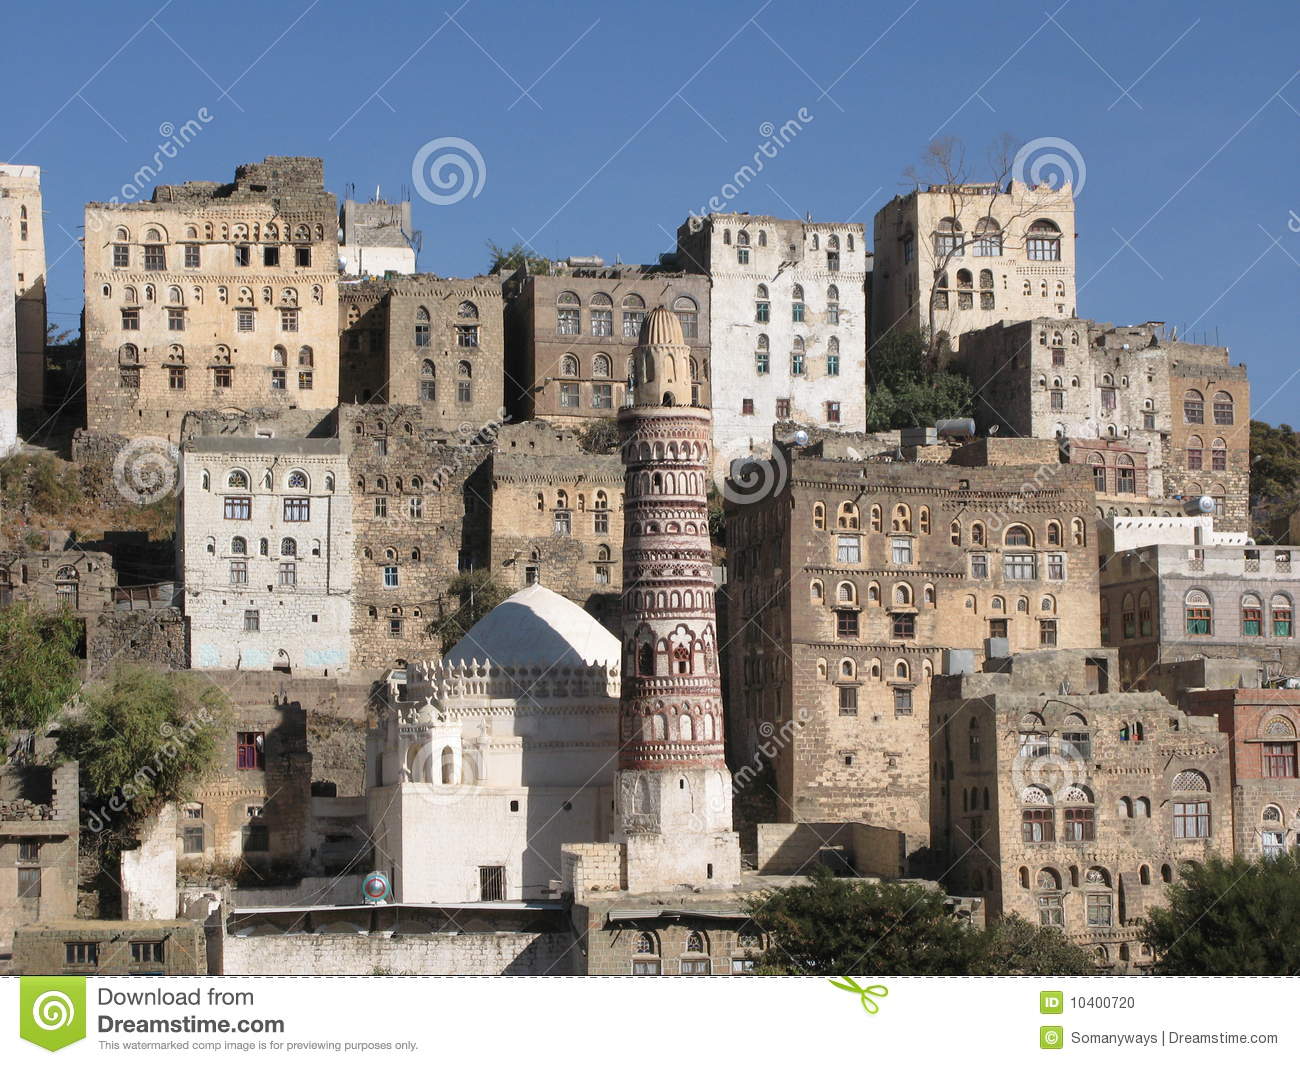 Ancient Building in Yemen